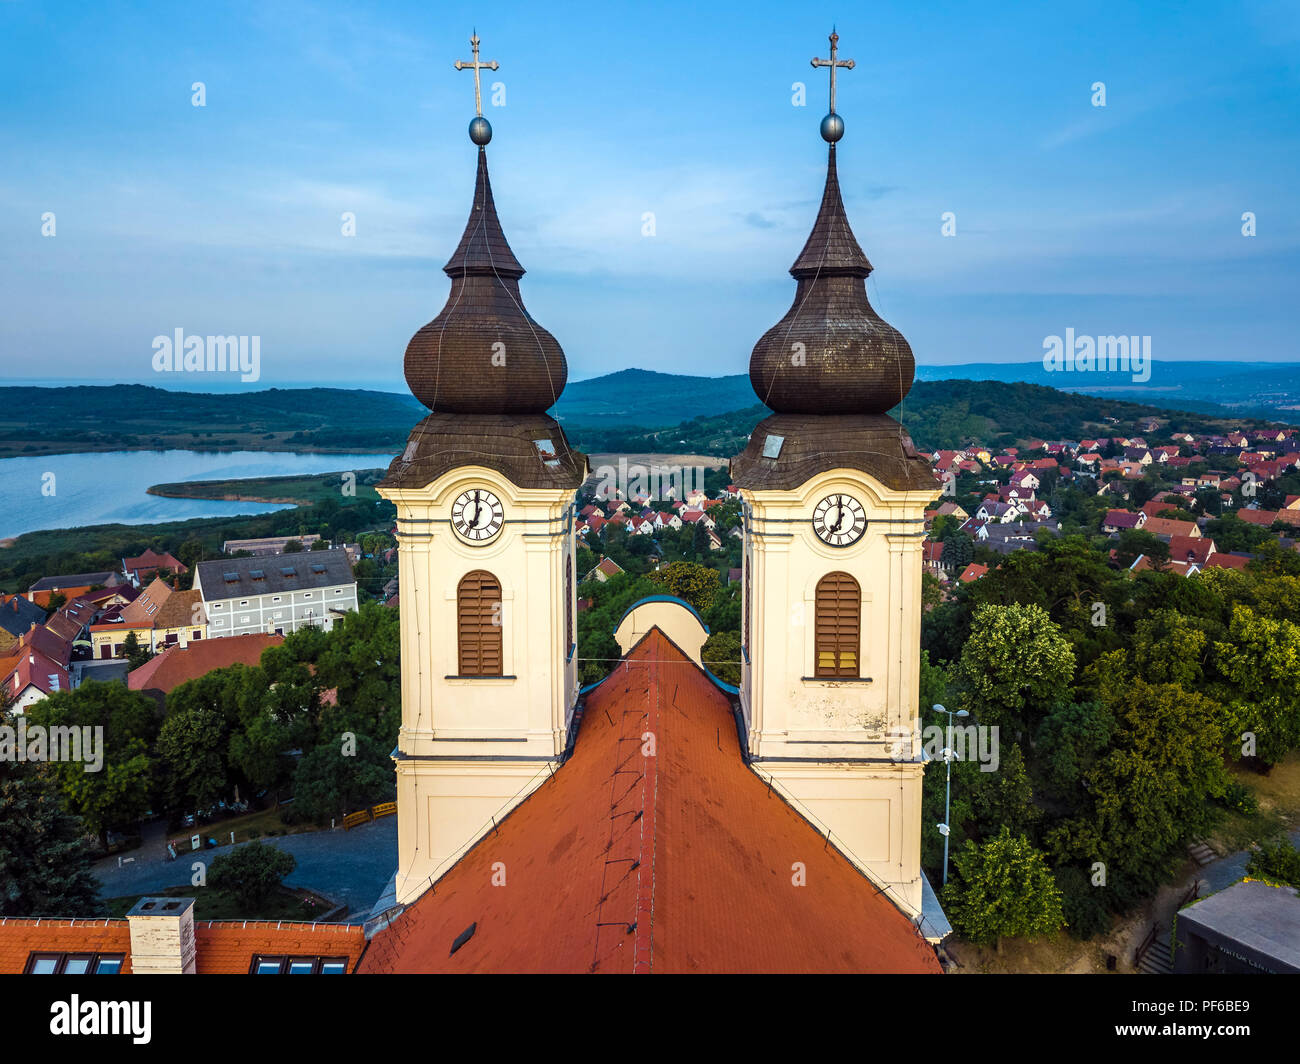 Tihany, Hungary - The two clock towers of the famous Benedictine Monastery of Tihany (Tihany Abbey) at sunrise Stock Photo